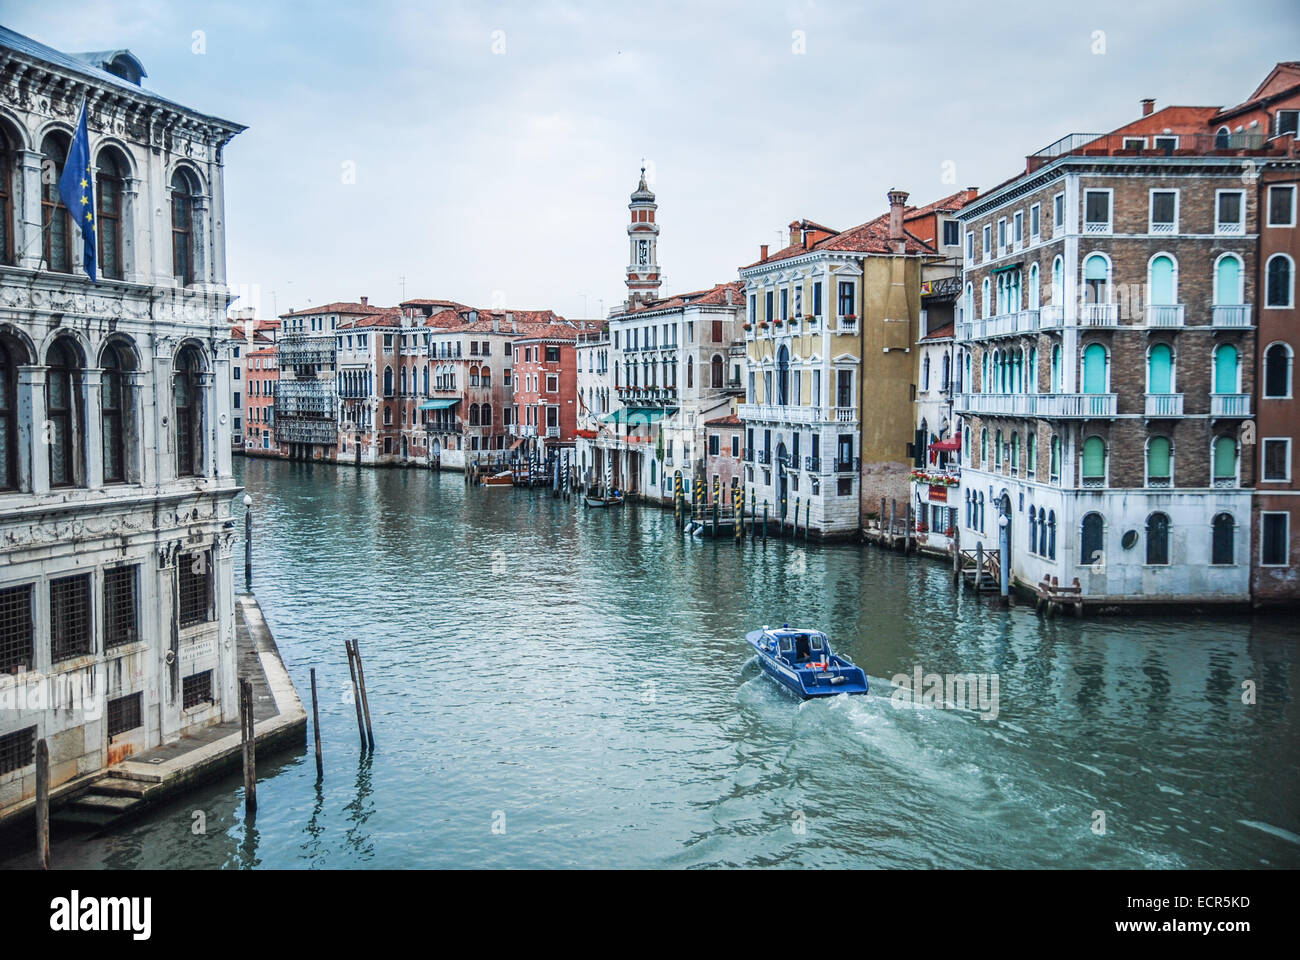 Venice, Italy, Grand Canal Stock Photo